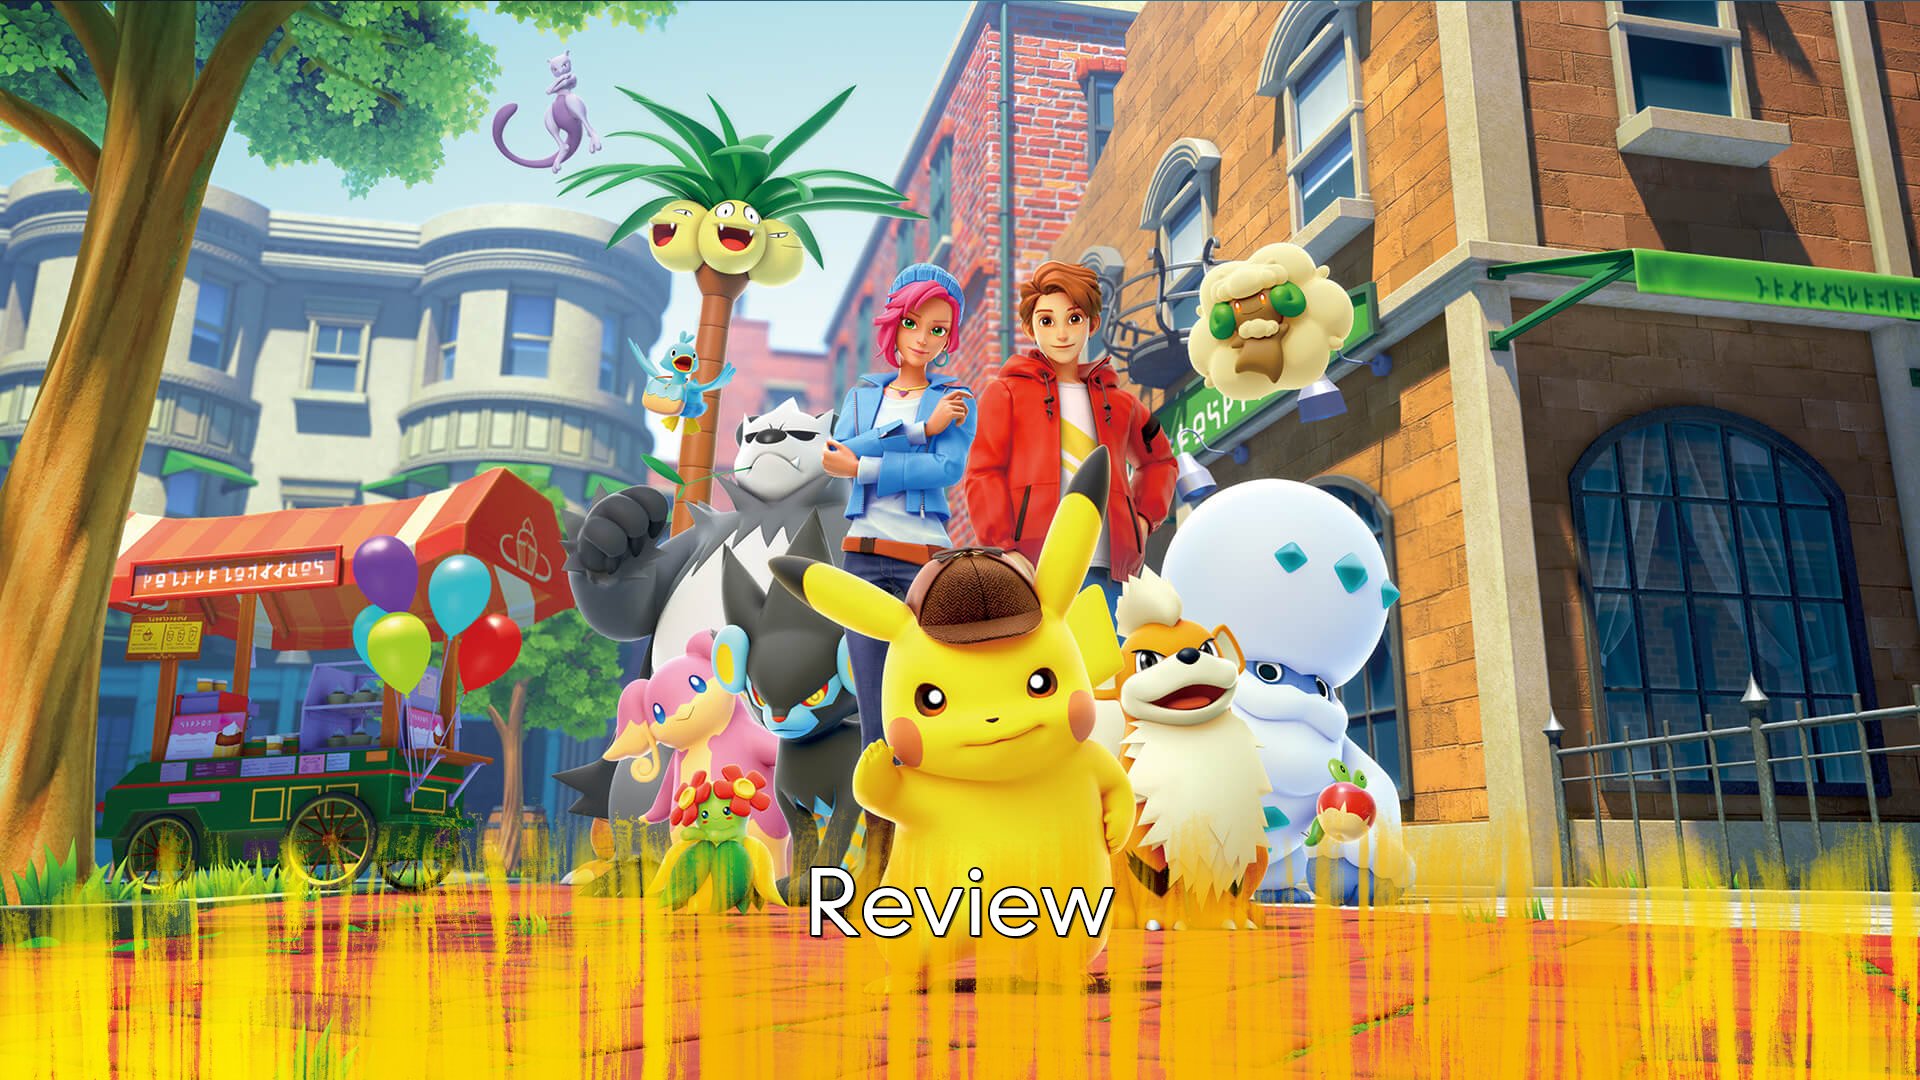 Review de Pokémon Sword e Shield - Portal do Nerd